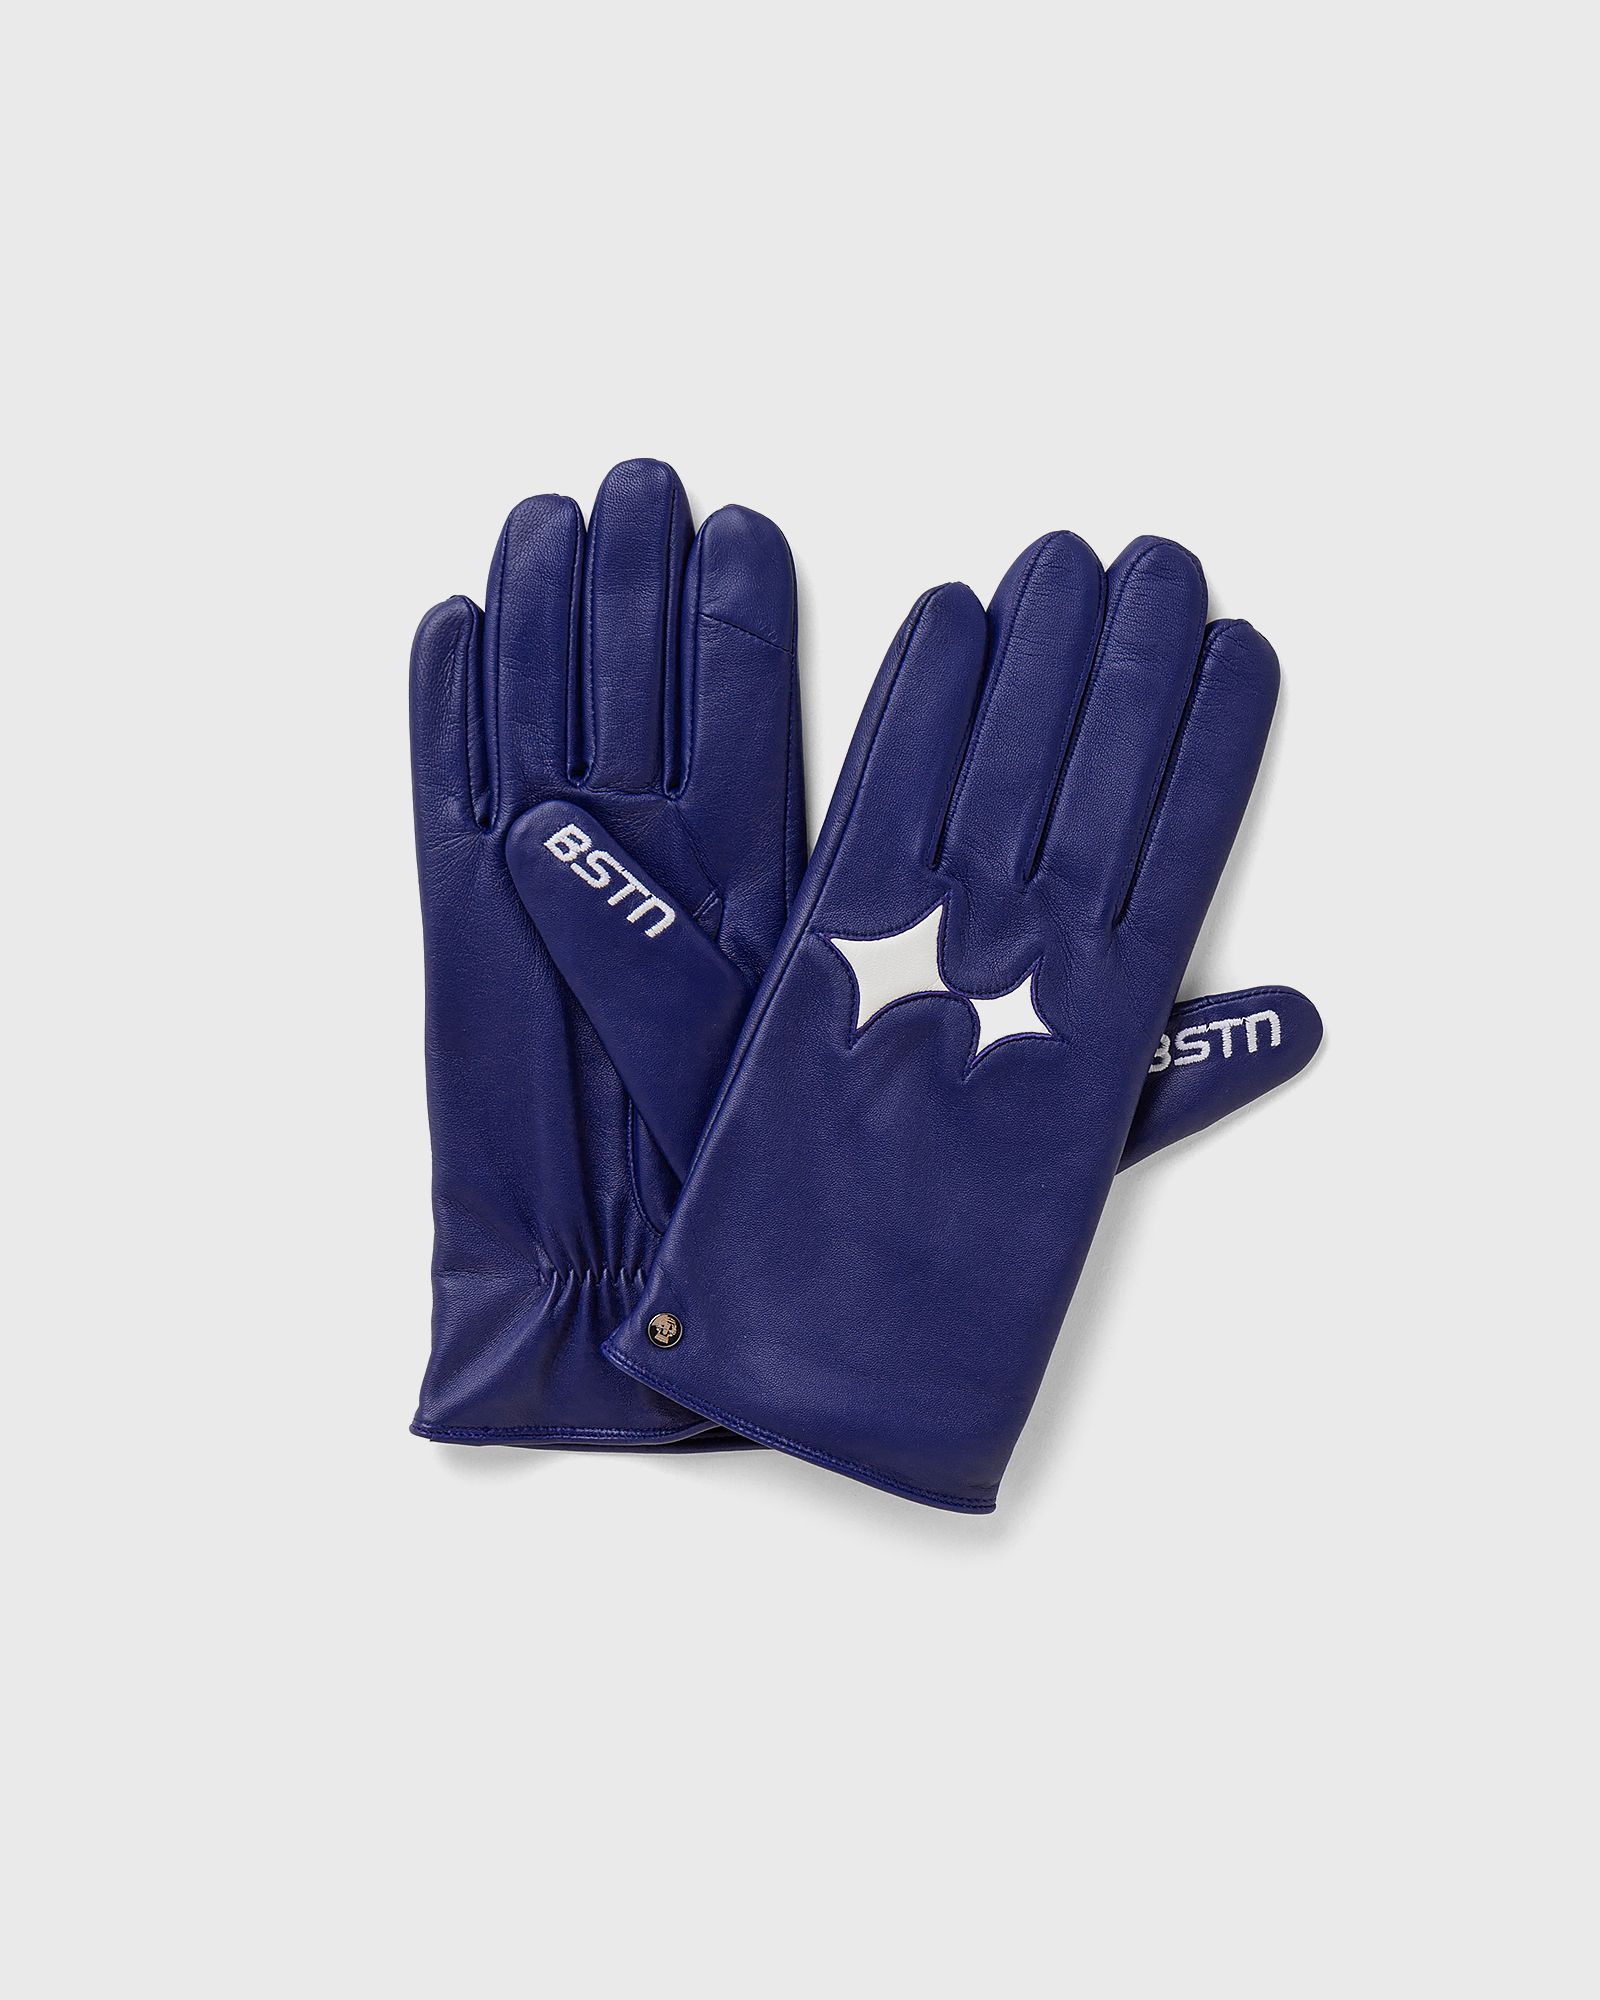 BSTN Brand - roeckl x  touch gloves men men gloves blue in größe:10